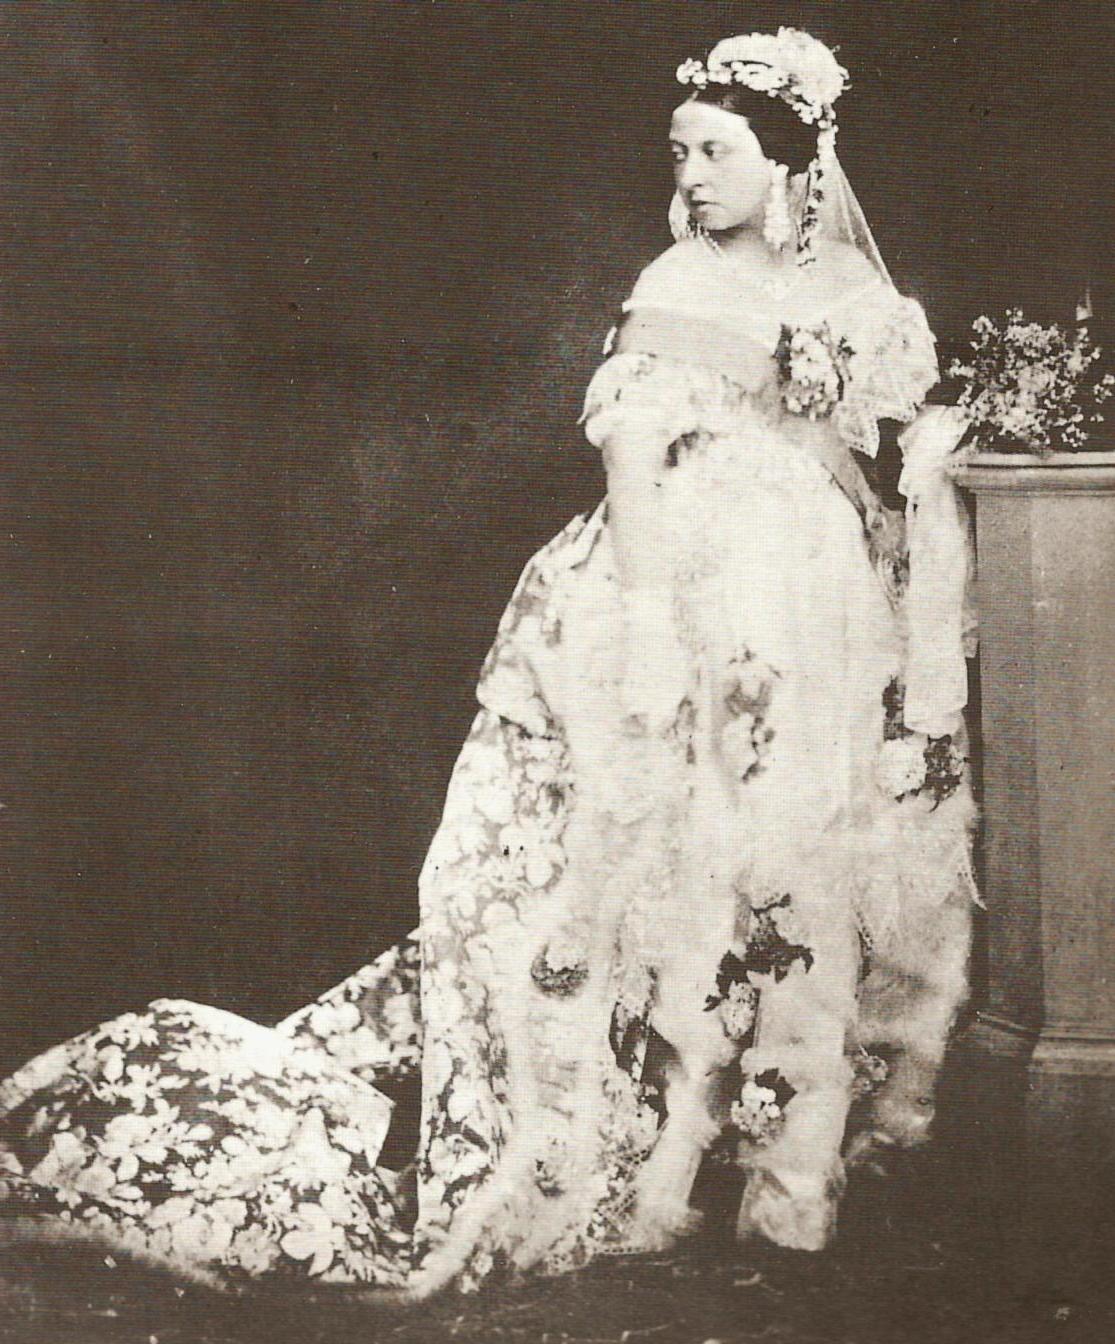 Queen Victoria in her wedding